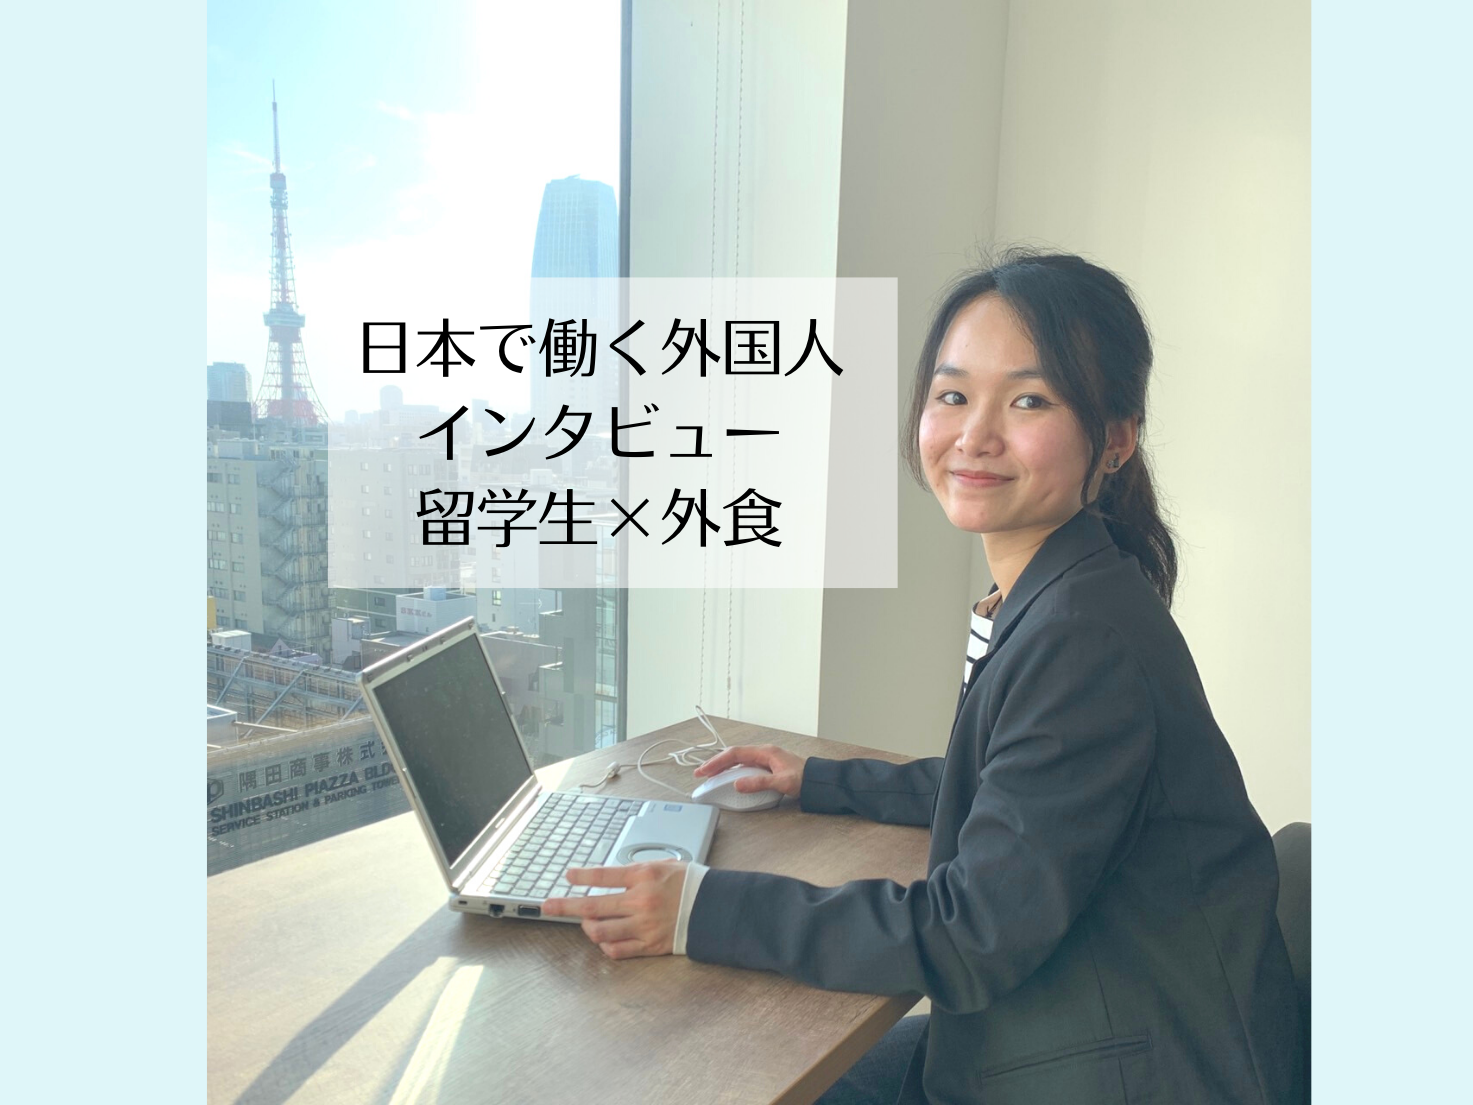 【日本で働く外国人インタビュー/外食】アルバイトを通して、たくさんの出会いがありました。［ベトナム出身/留学生］